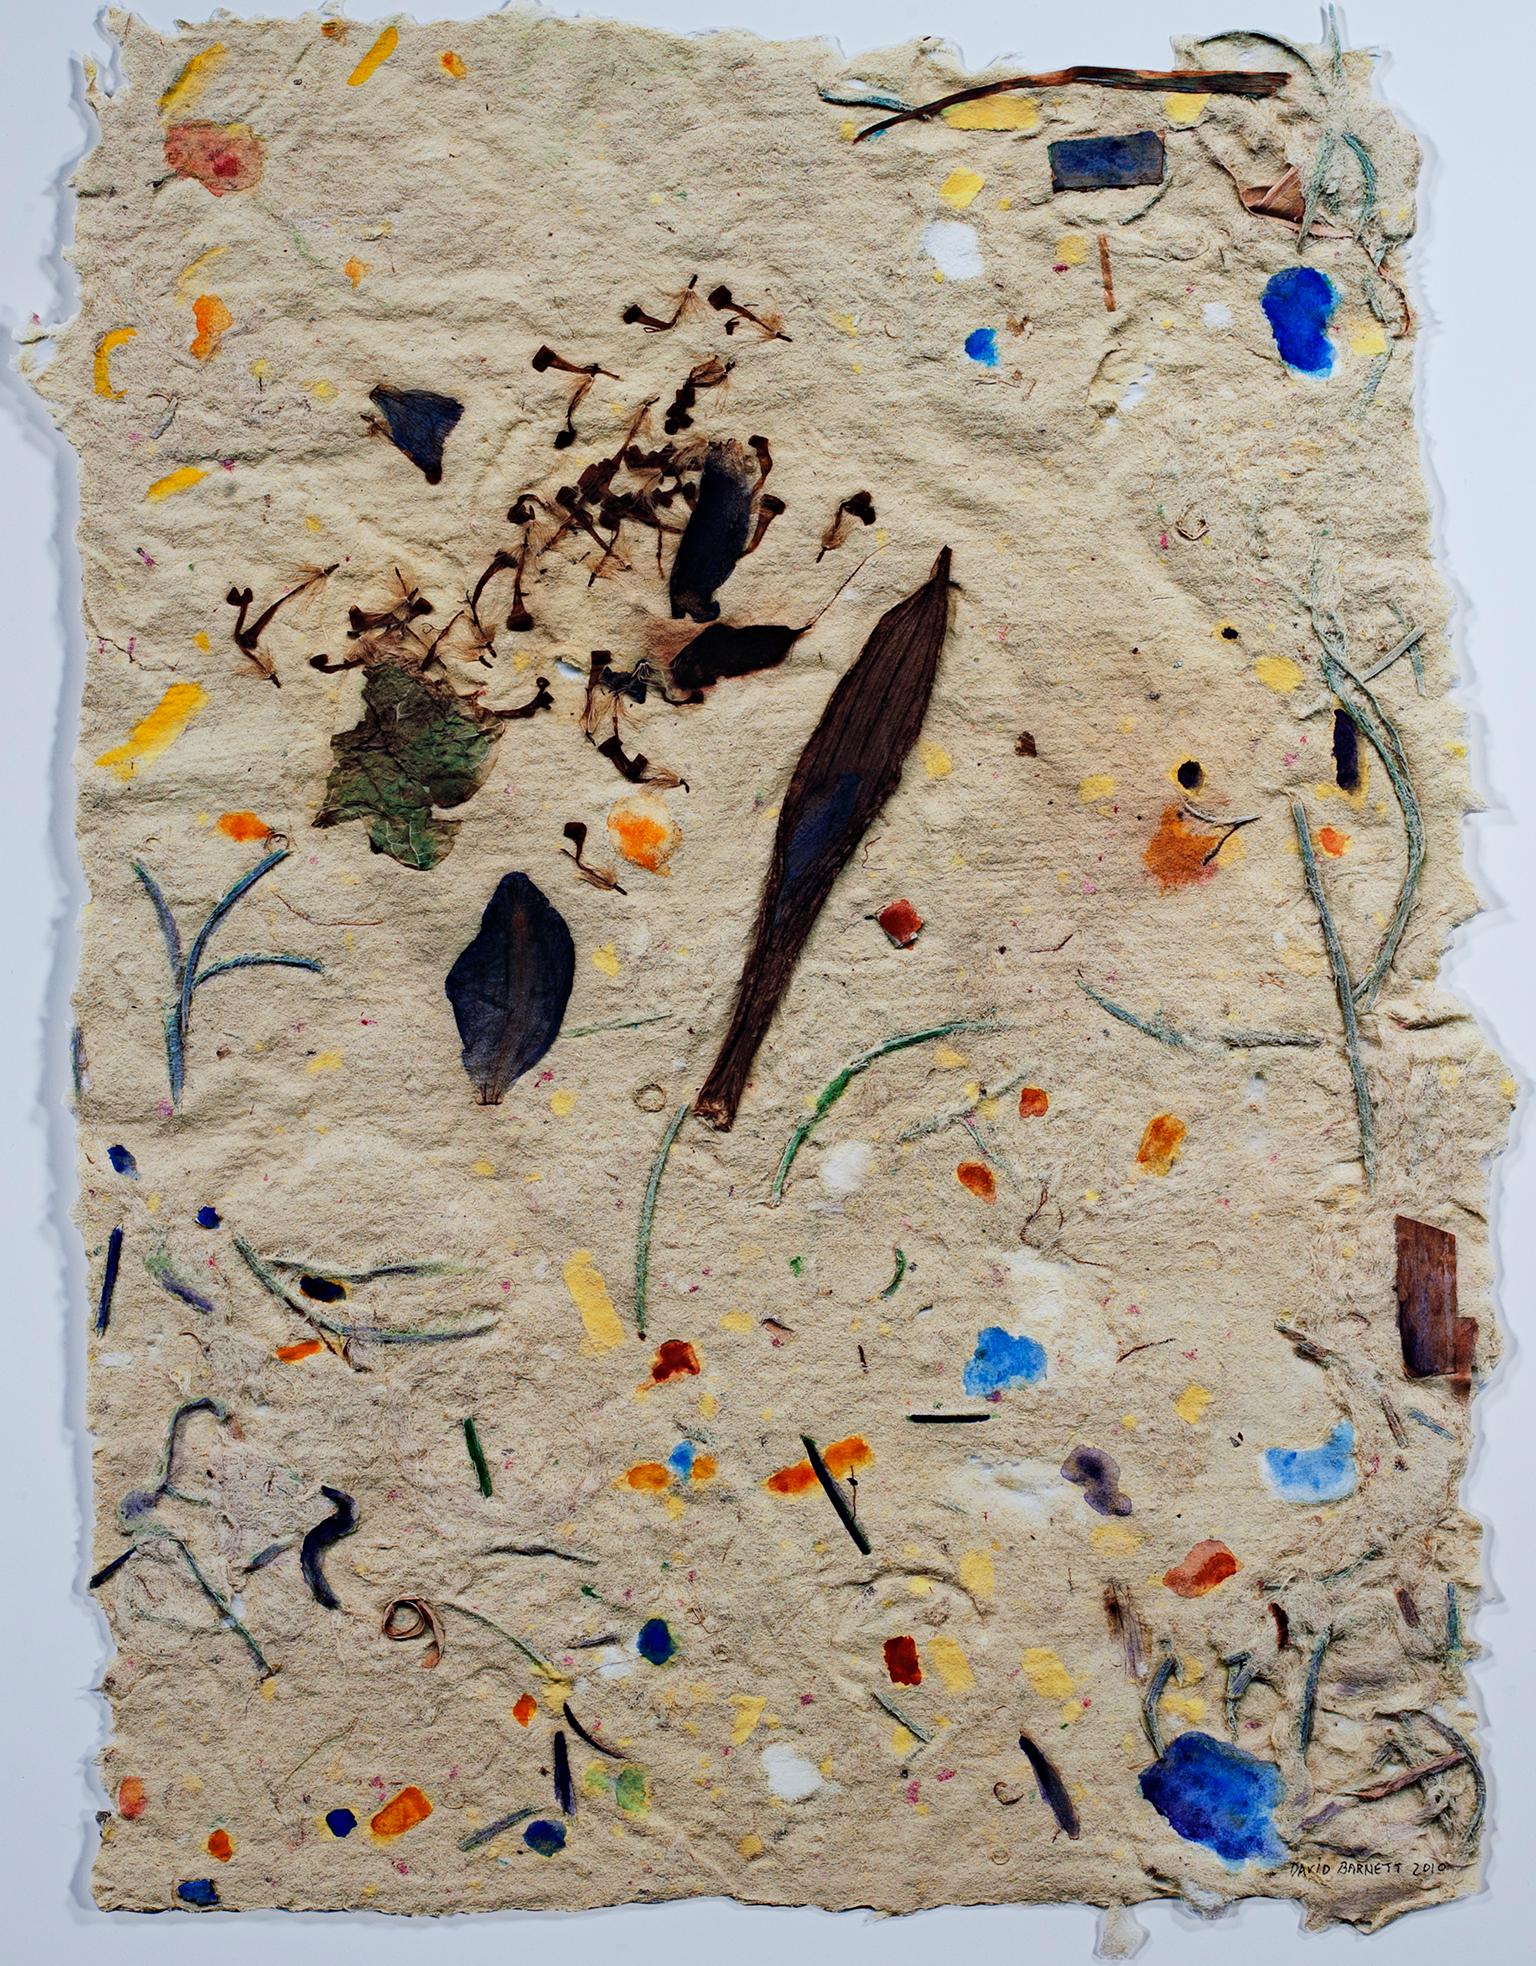 "Garden Celebration II" ist ein Originalwerk von David Barnett in Mischtechnik mit Aquarellfarben auf Papier, das vom Künstler handgefertigt wurde. Die Künstlerin hat verschiedene Objekte in das Papier eingebettet, darunter Blätter und Blütenblätter